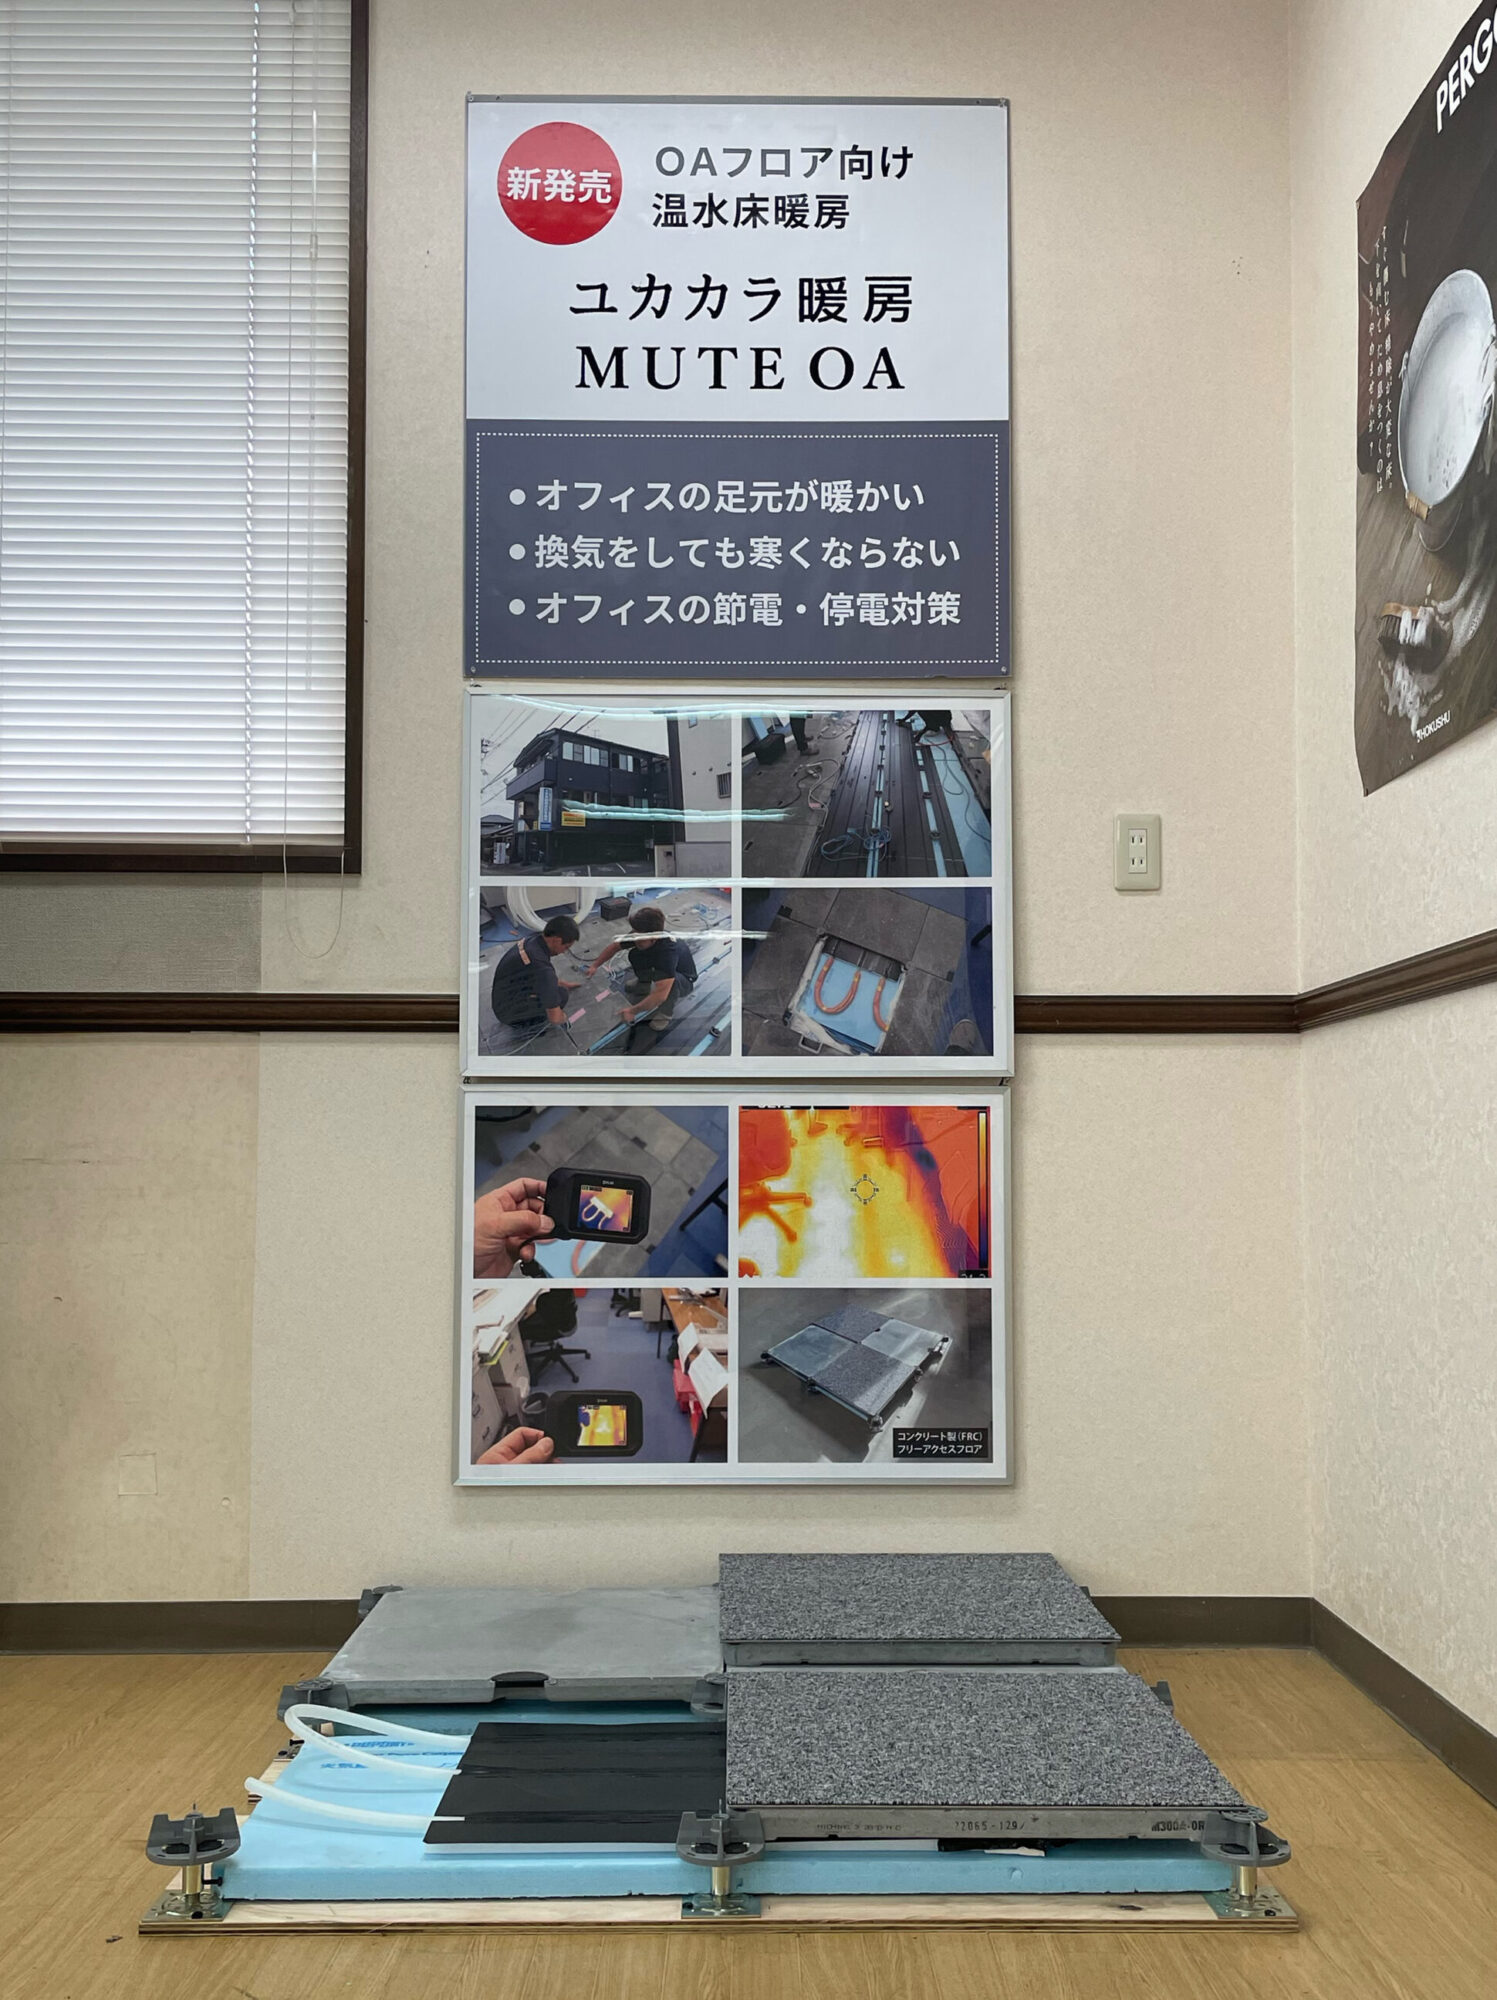 FHSネットワーク本部にユカカラ暖房MUTE OAを常設展示しています